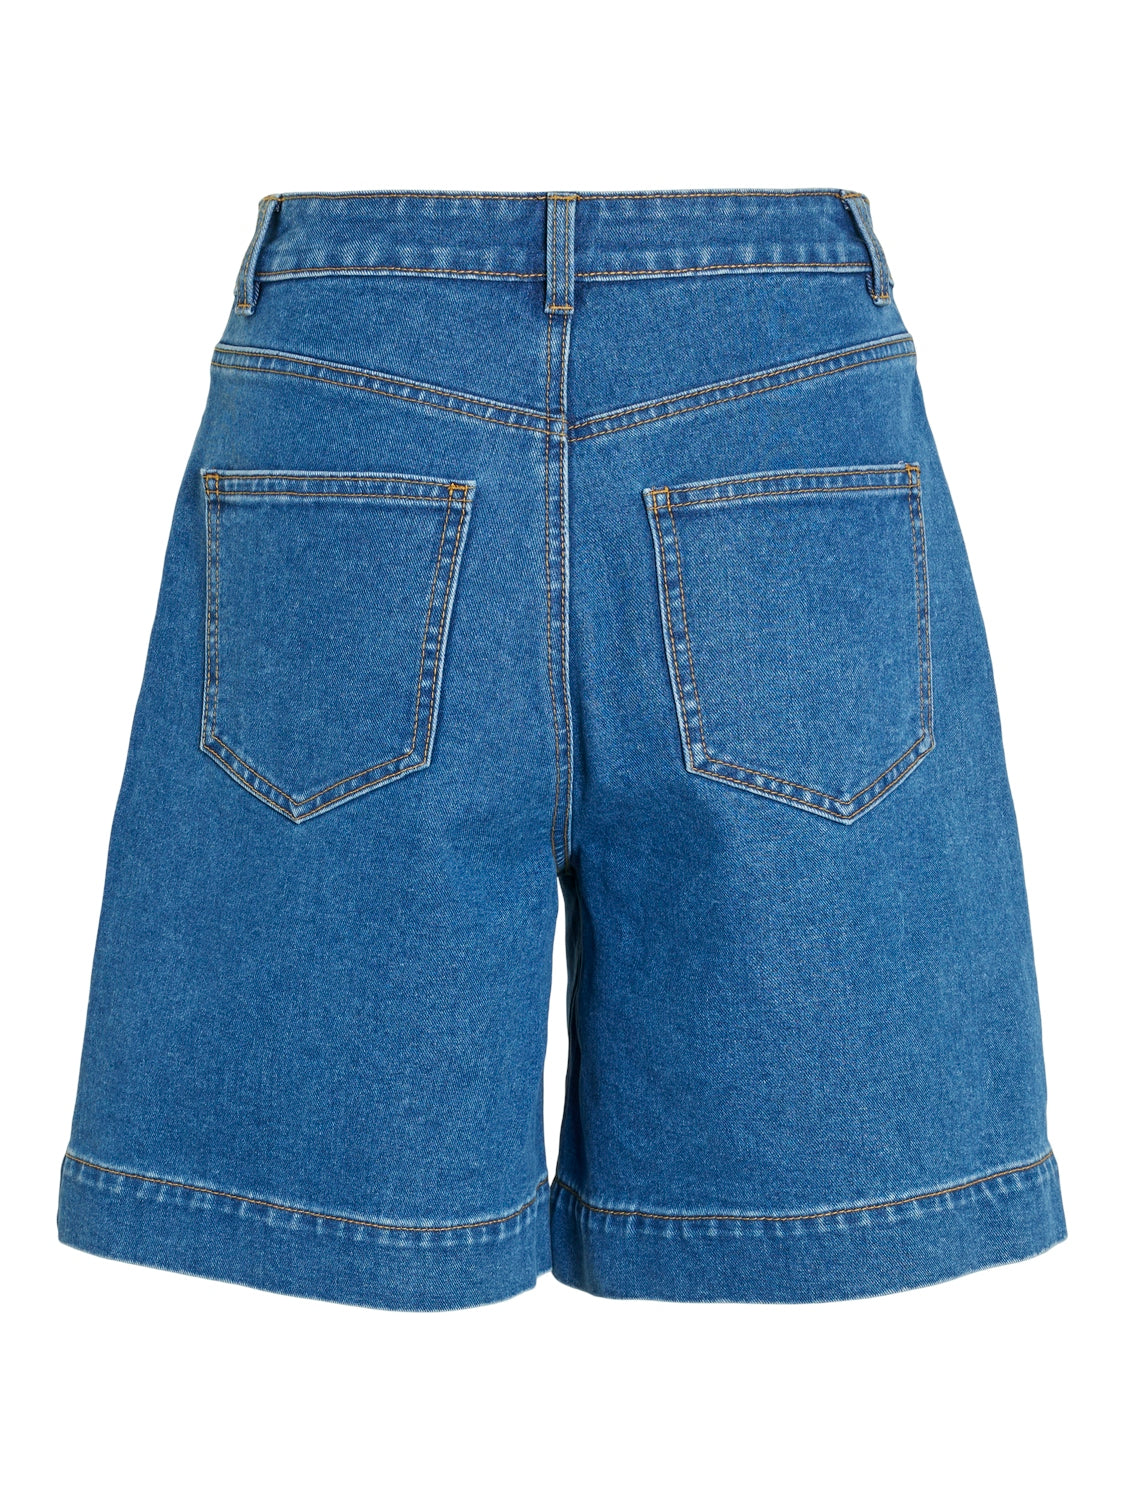 Kenya Demin Shorts (Medium Blue)